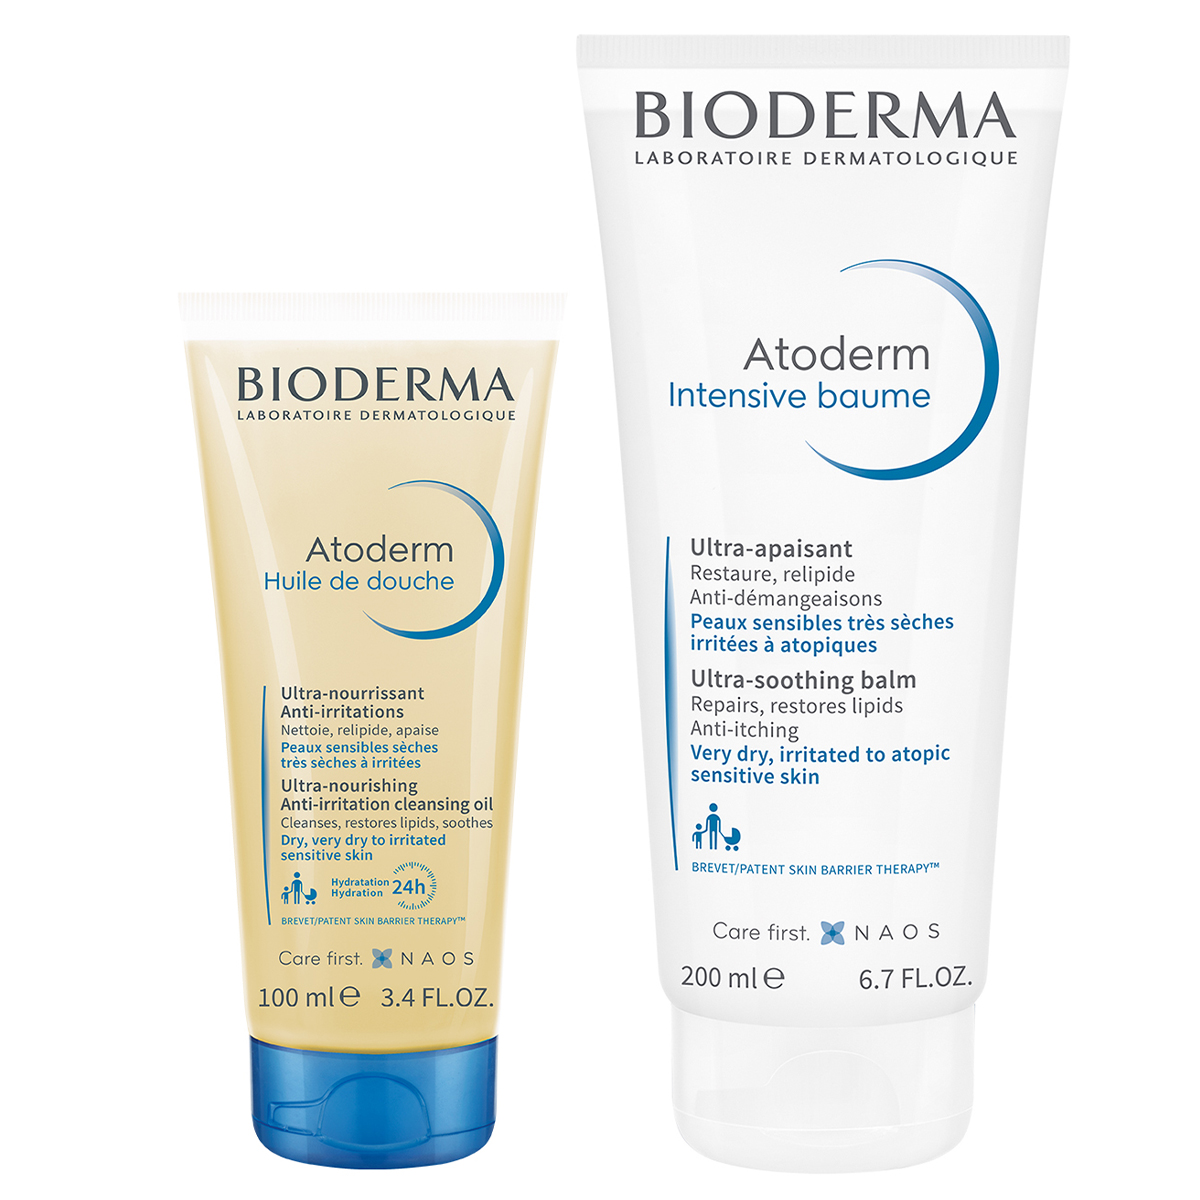 Bioderma Набор Защита и увлажнение сухой, чувствительной и атопичной кожи (Bioderma, Atoderm) bioderma бальзам интенсив 200 мл bioderma atoderm